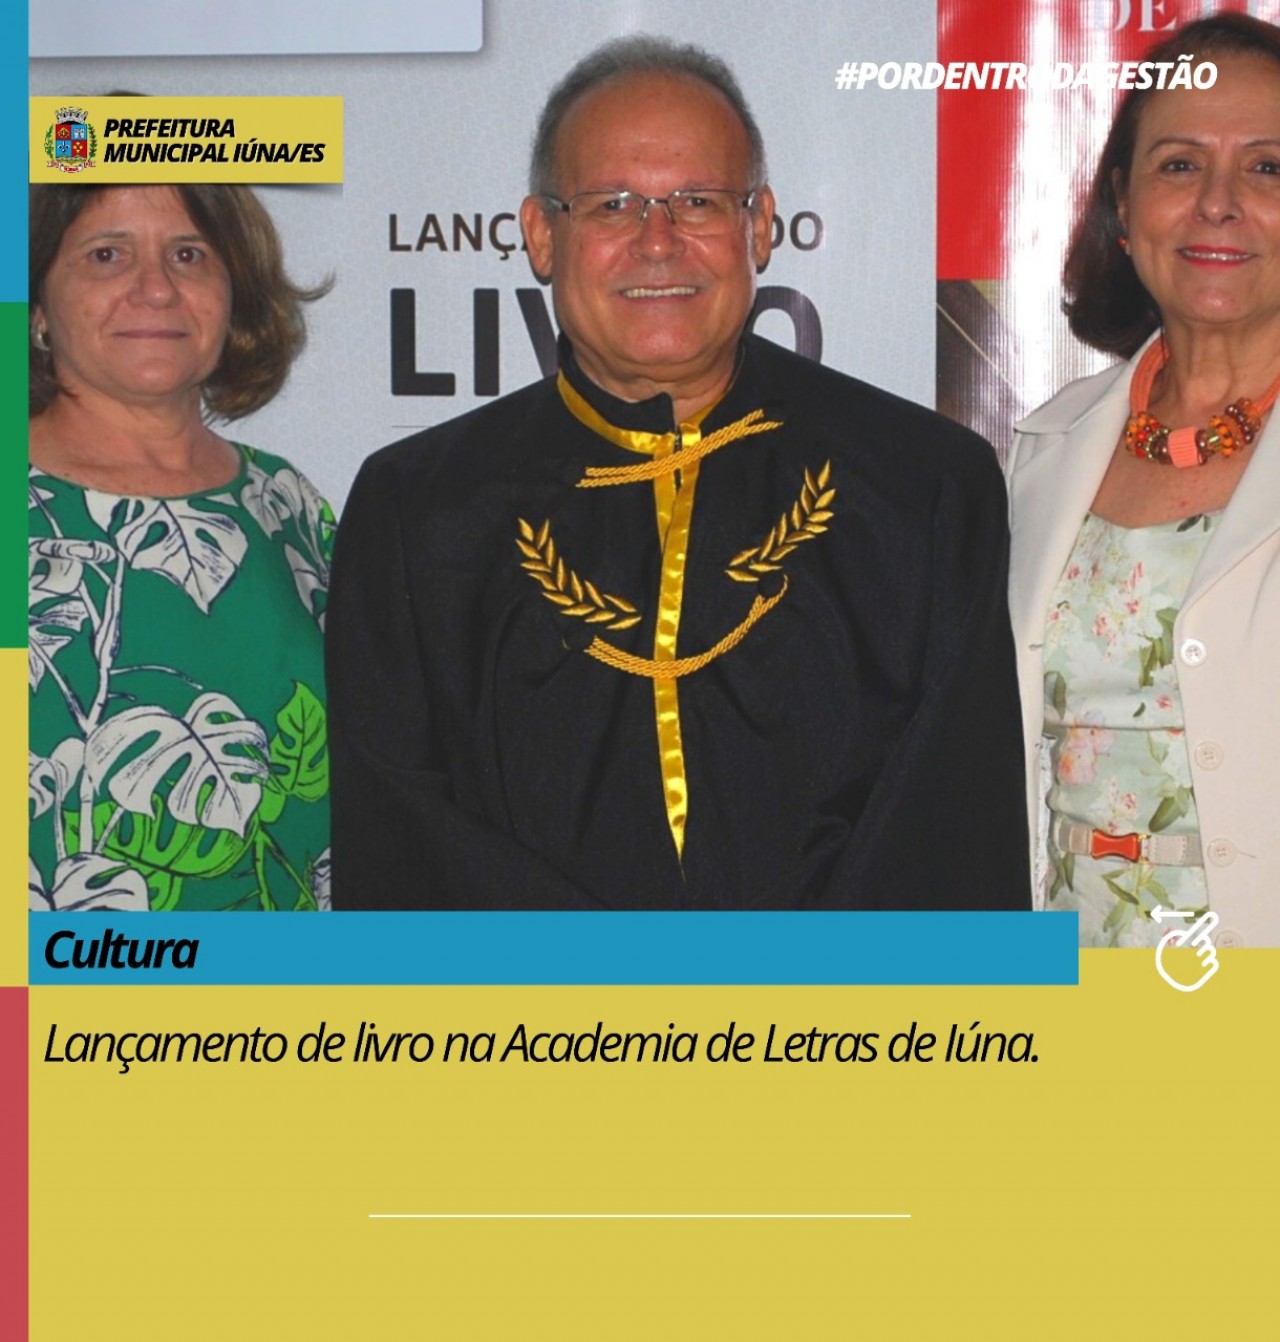 Lançamento do livro "Patronos e Acadêmicos" pela Academia Iunense de Letras.